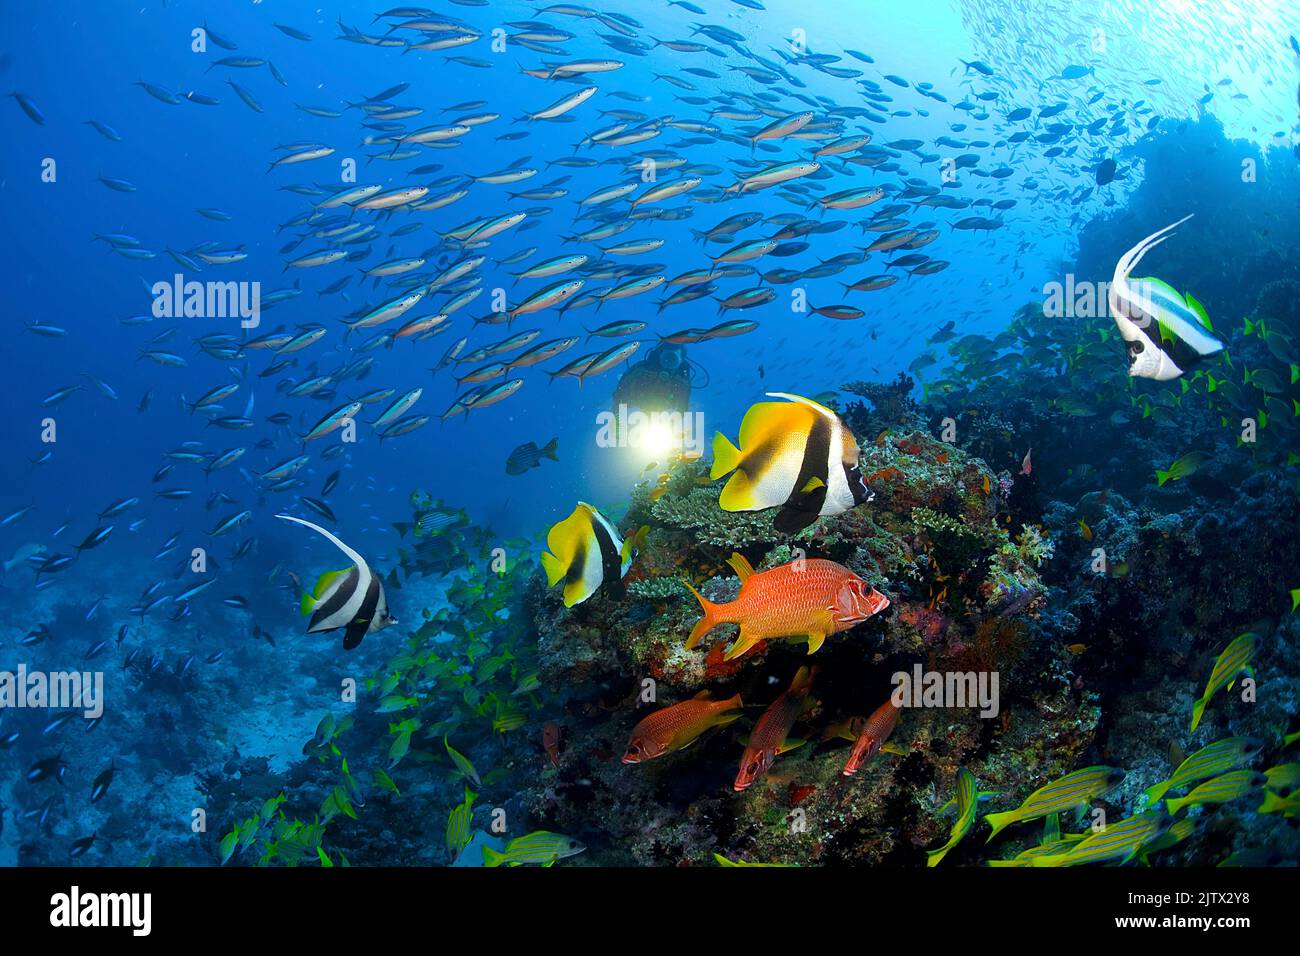 Plongée sous-marine dans un récif de corail des maldives avec poissons de corail colorés, Maldives, Océan Indien, Asie Banque D'Images